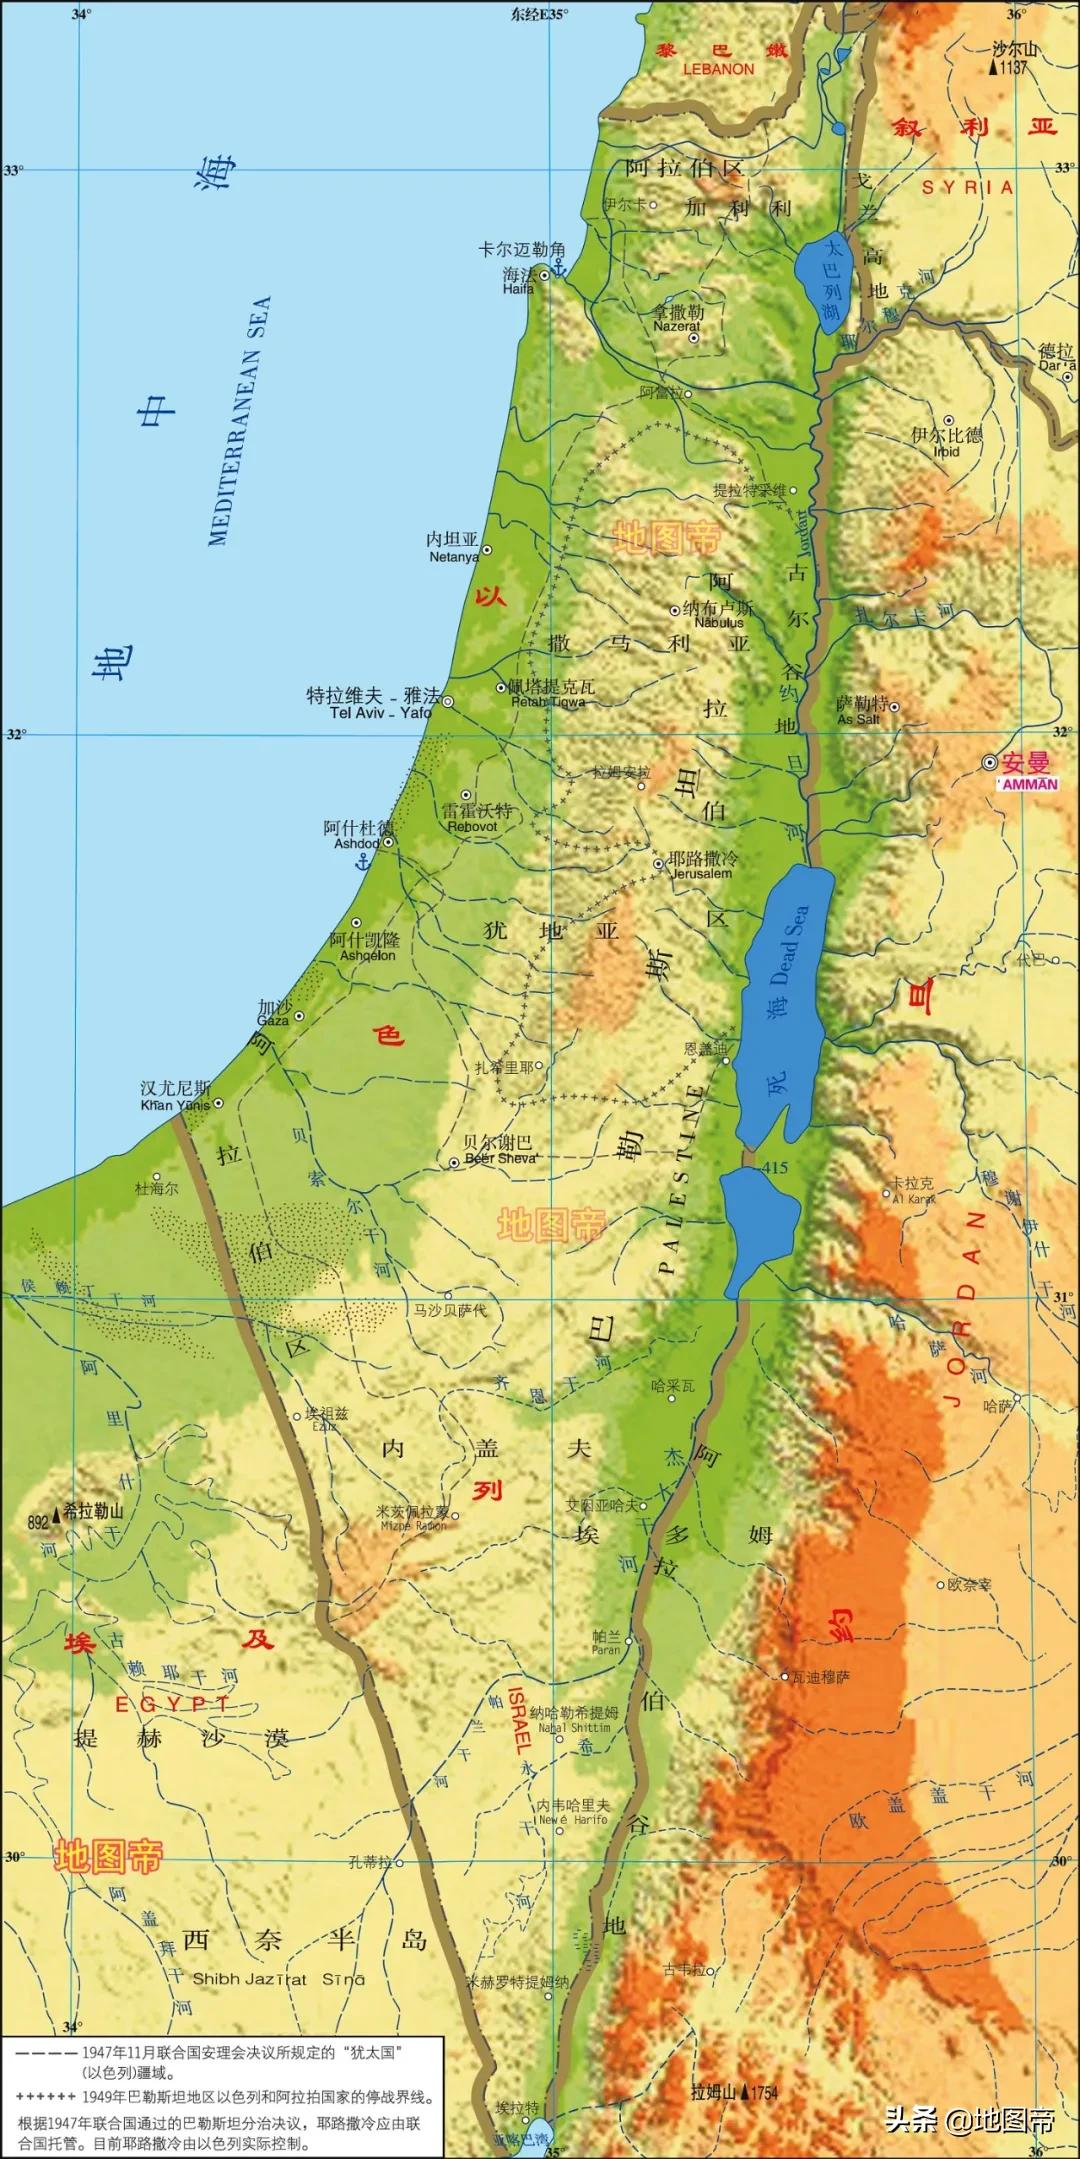 以色列有核武吗？面积那么小，在哪儿试爆